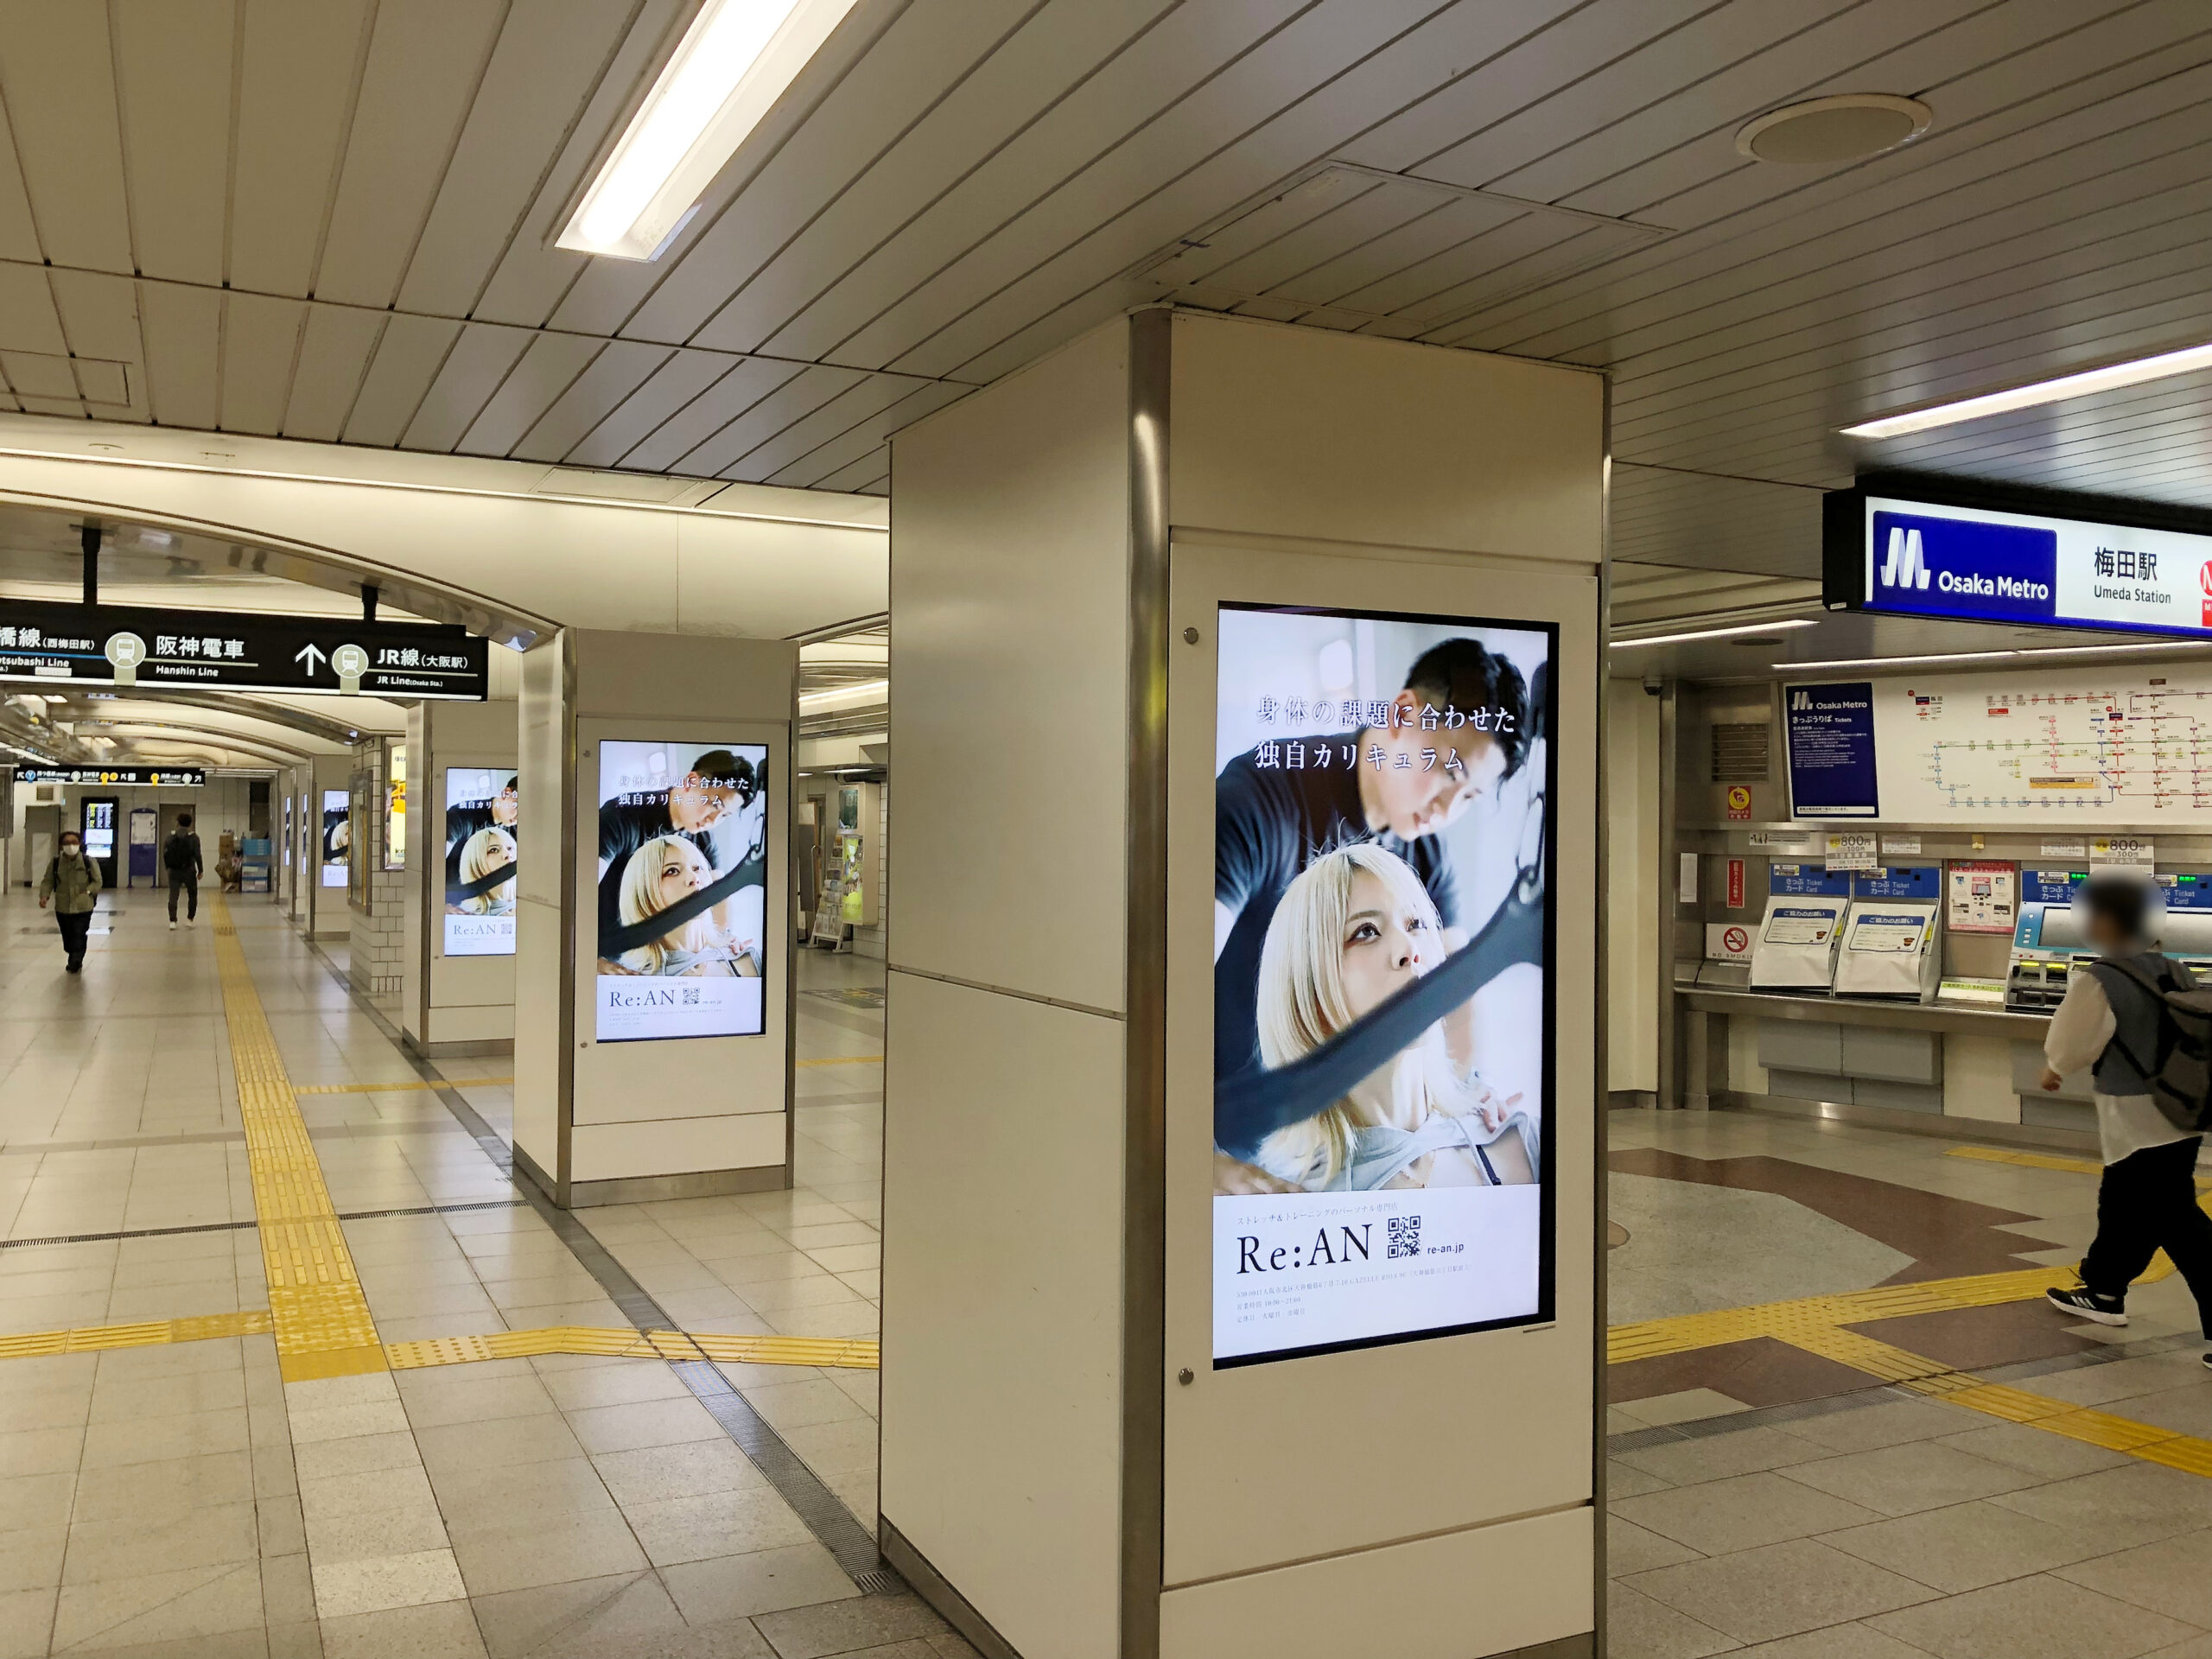 Osaka Metro梅田駅 駅デジタルサイネージ広告